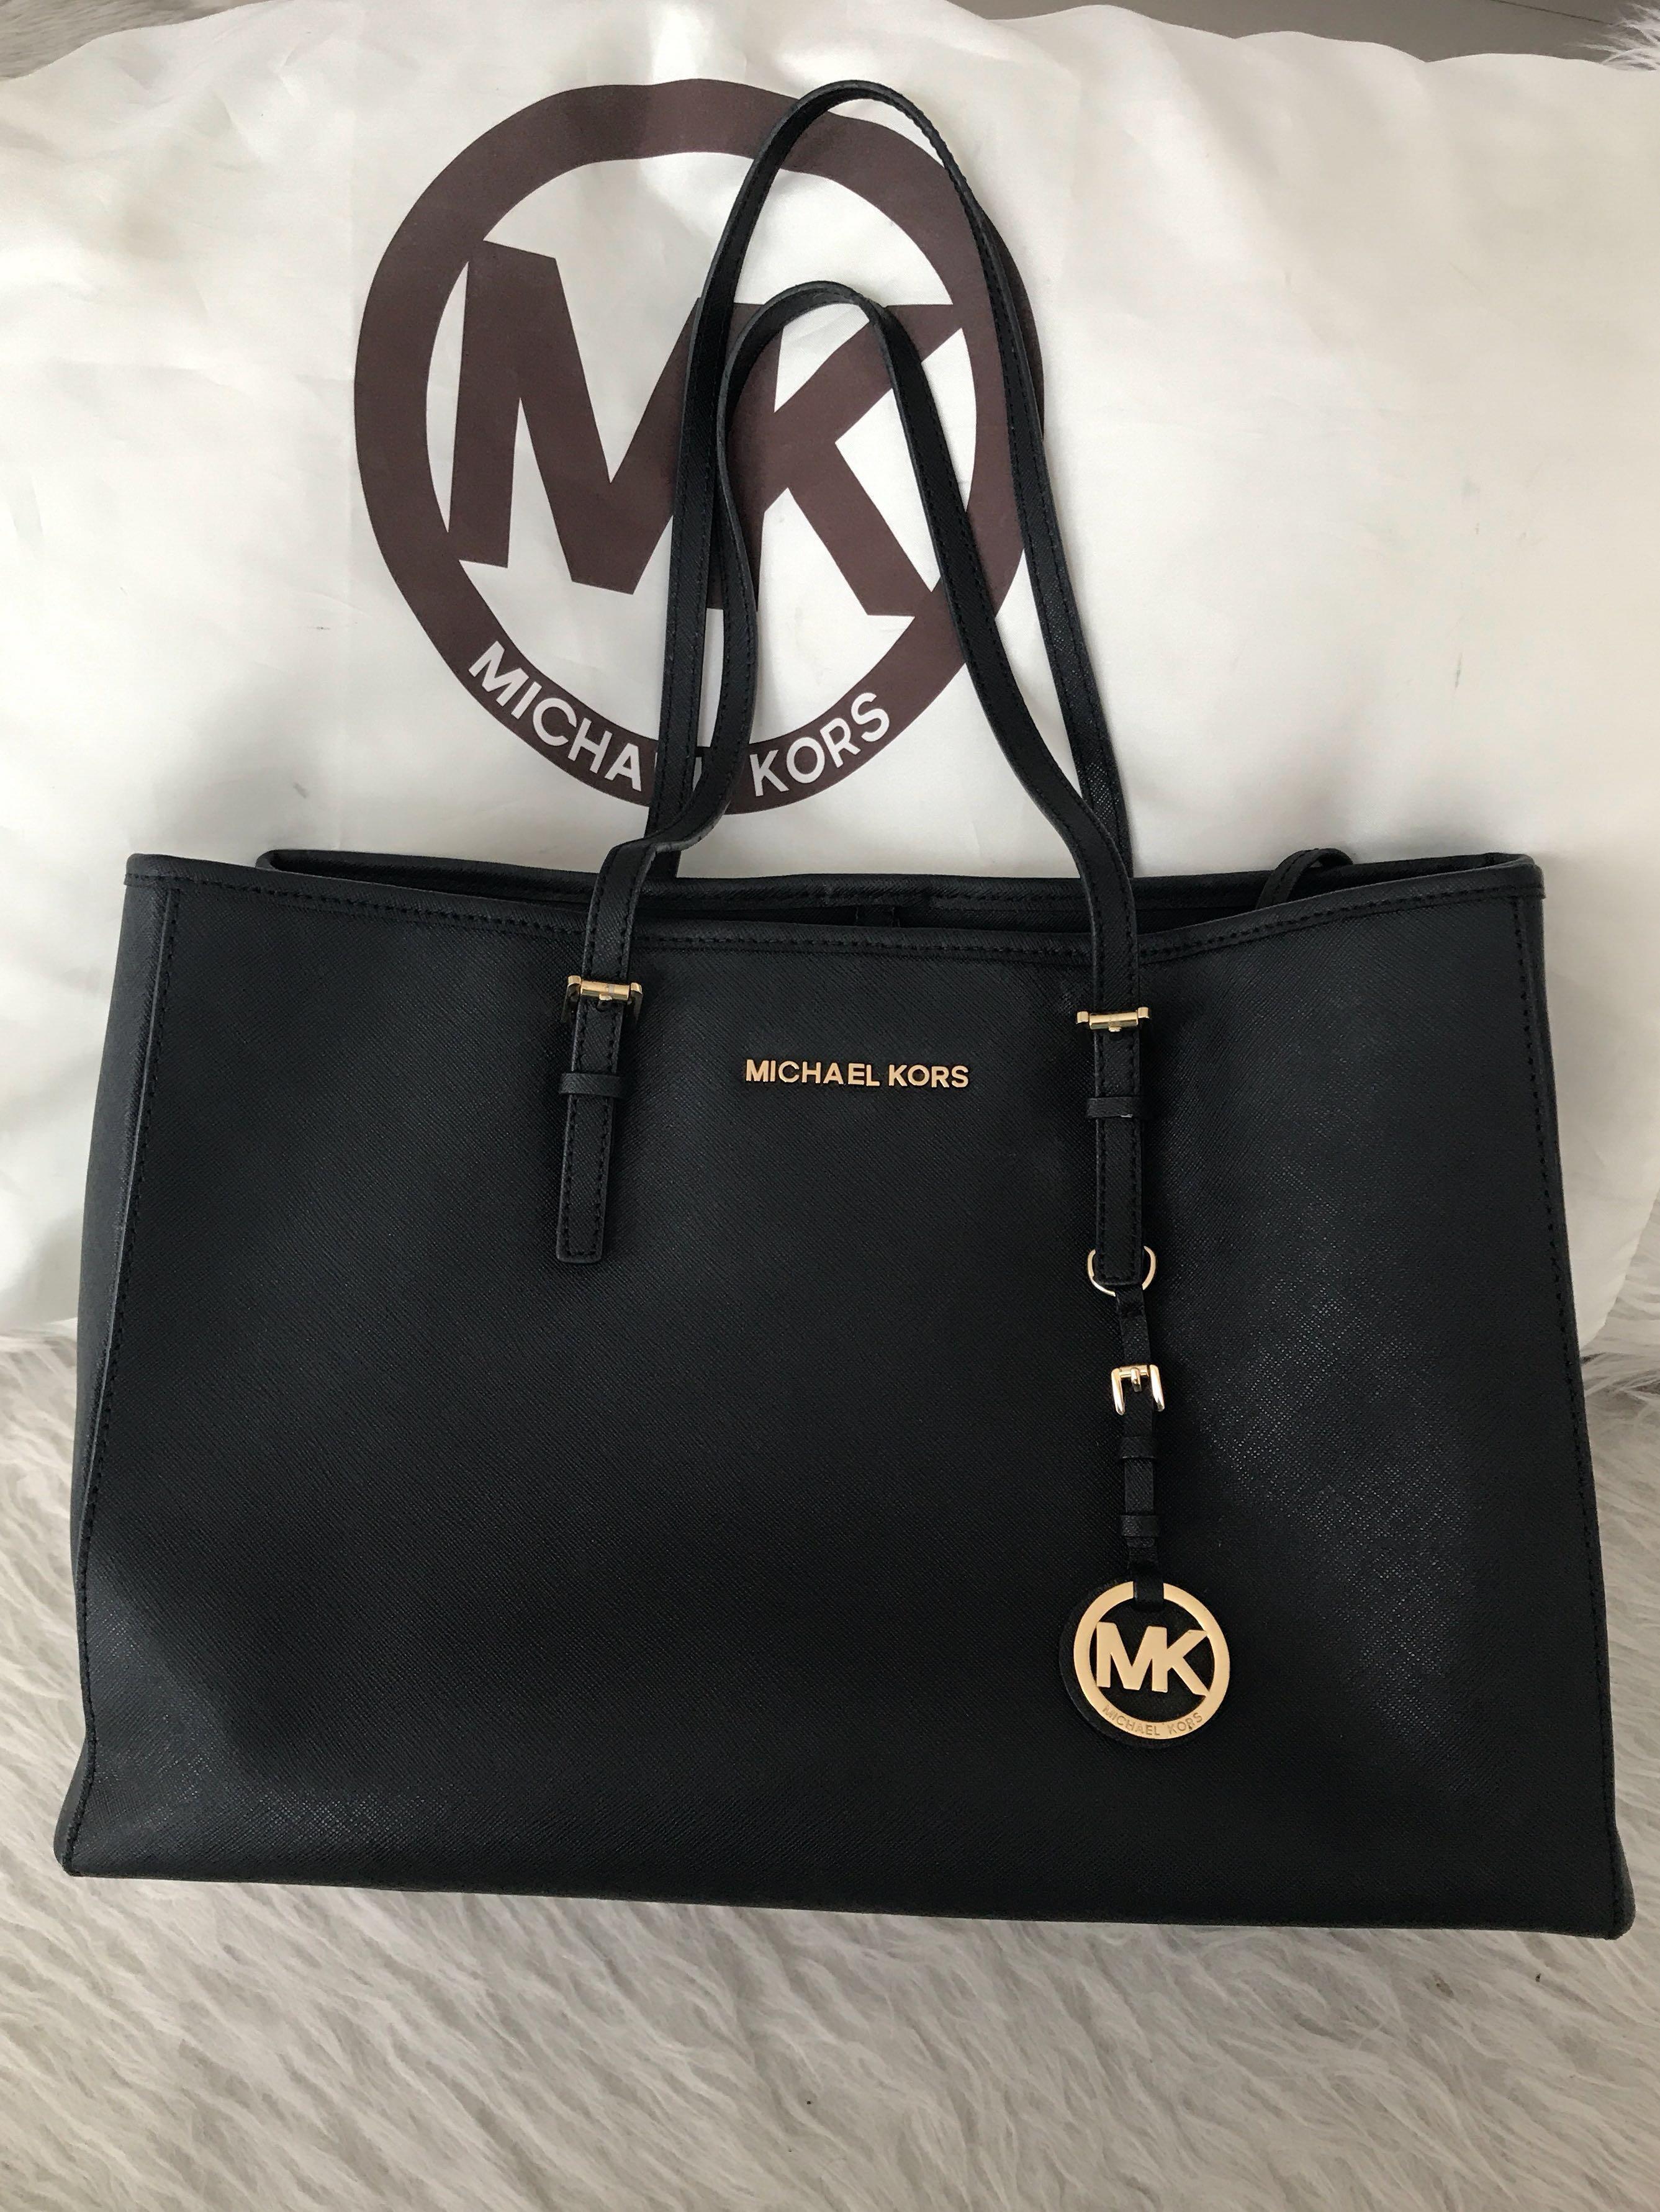 michael kors handbags jakarta cheap sale outlet online